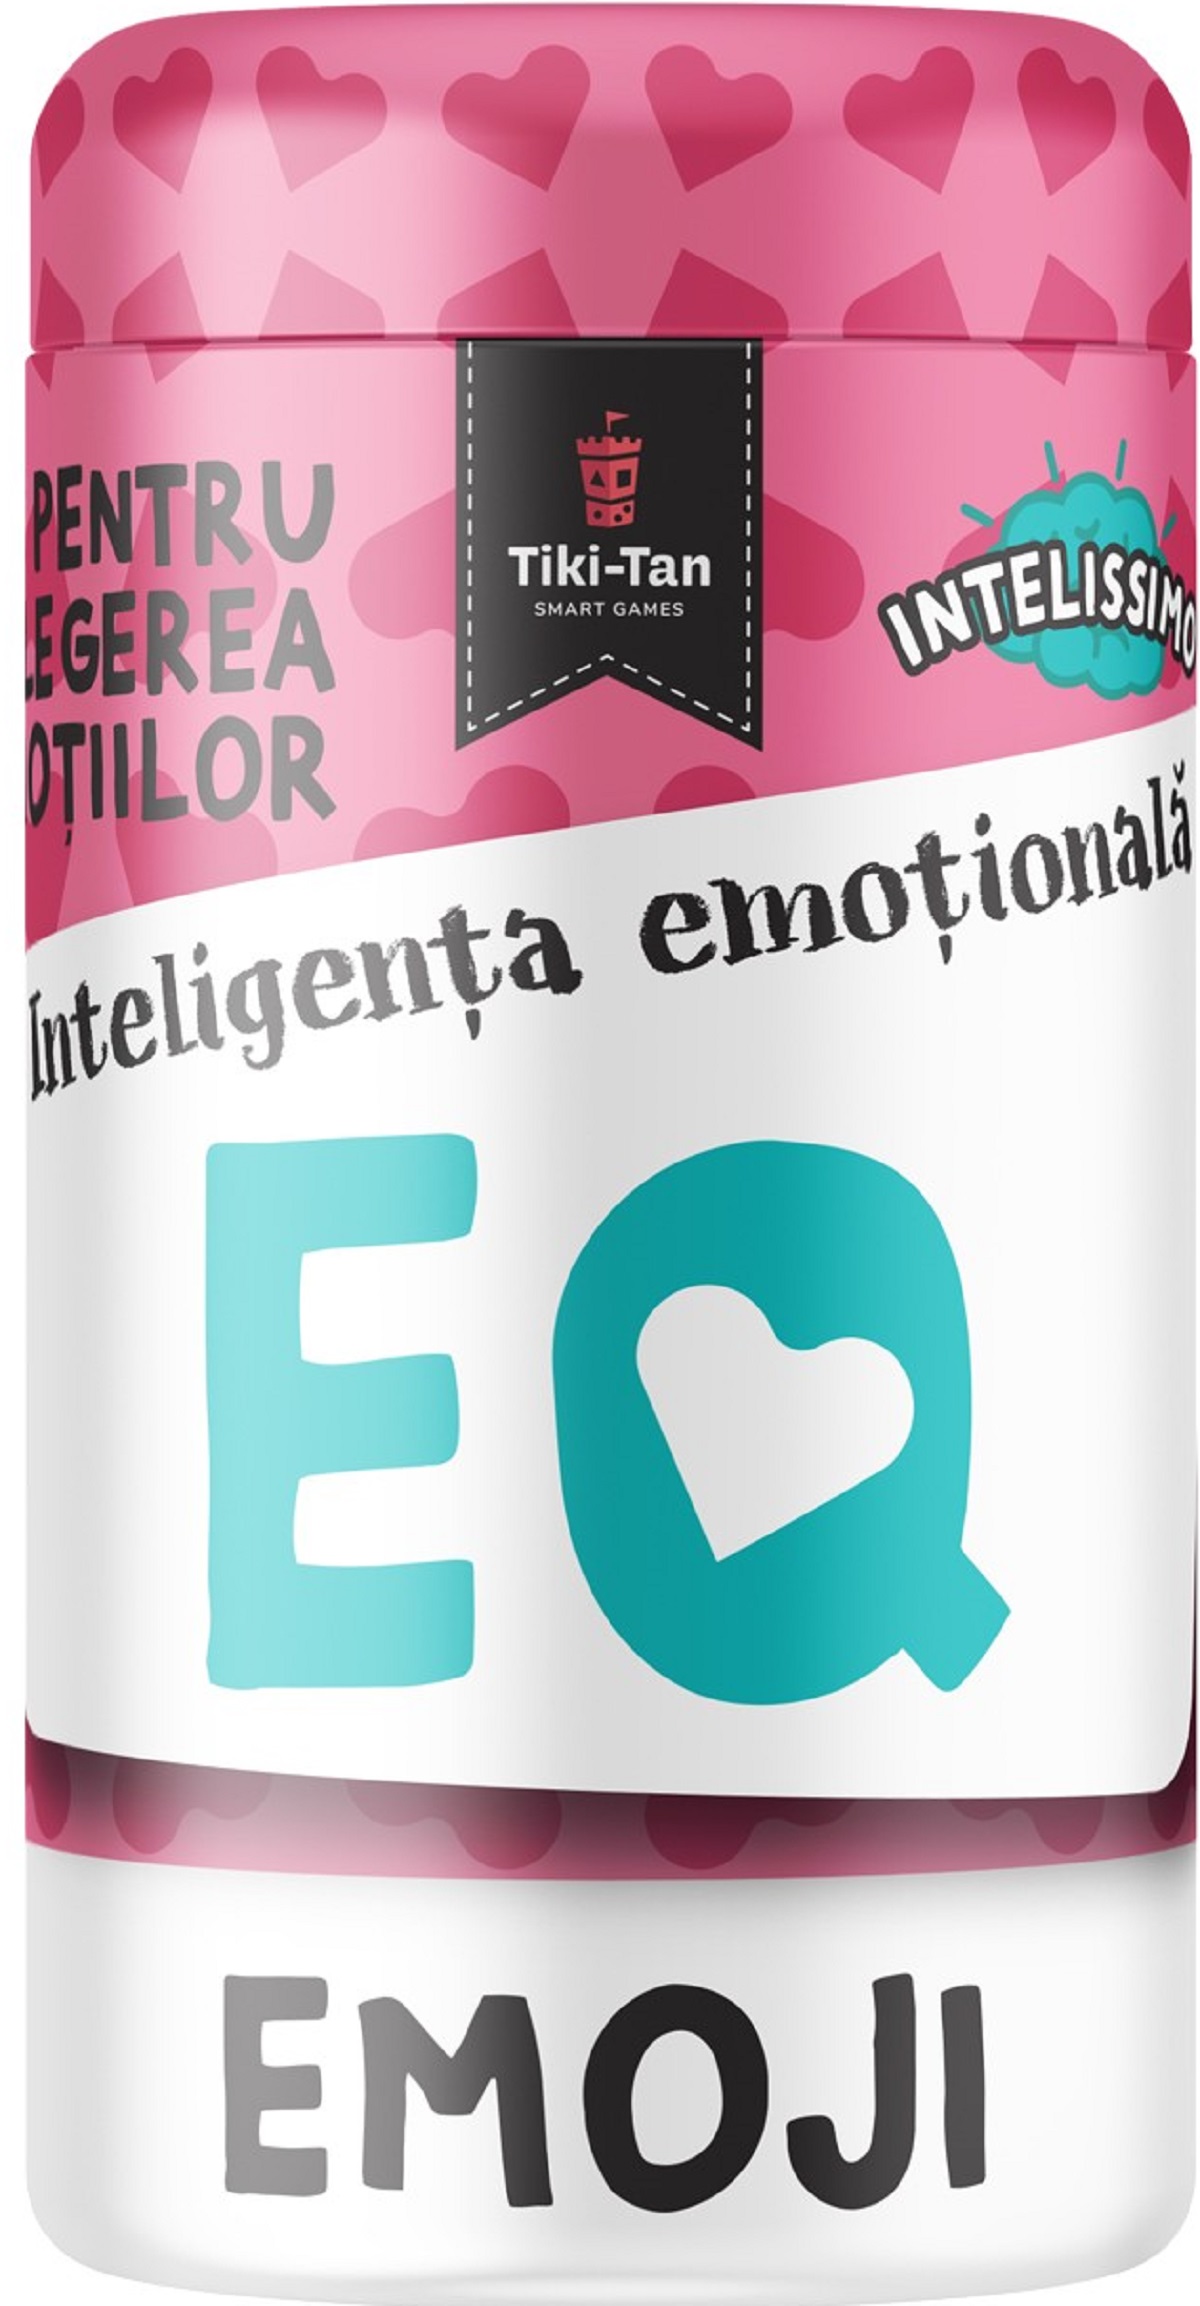 Inteligenta emotionala EQ Emoji